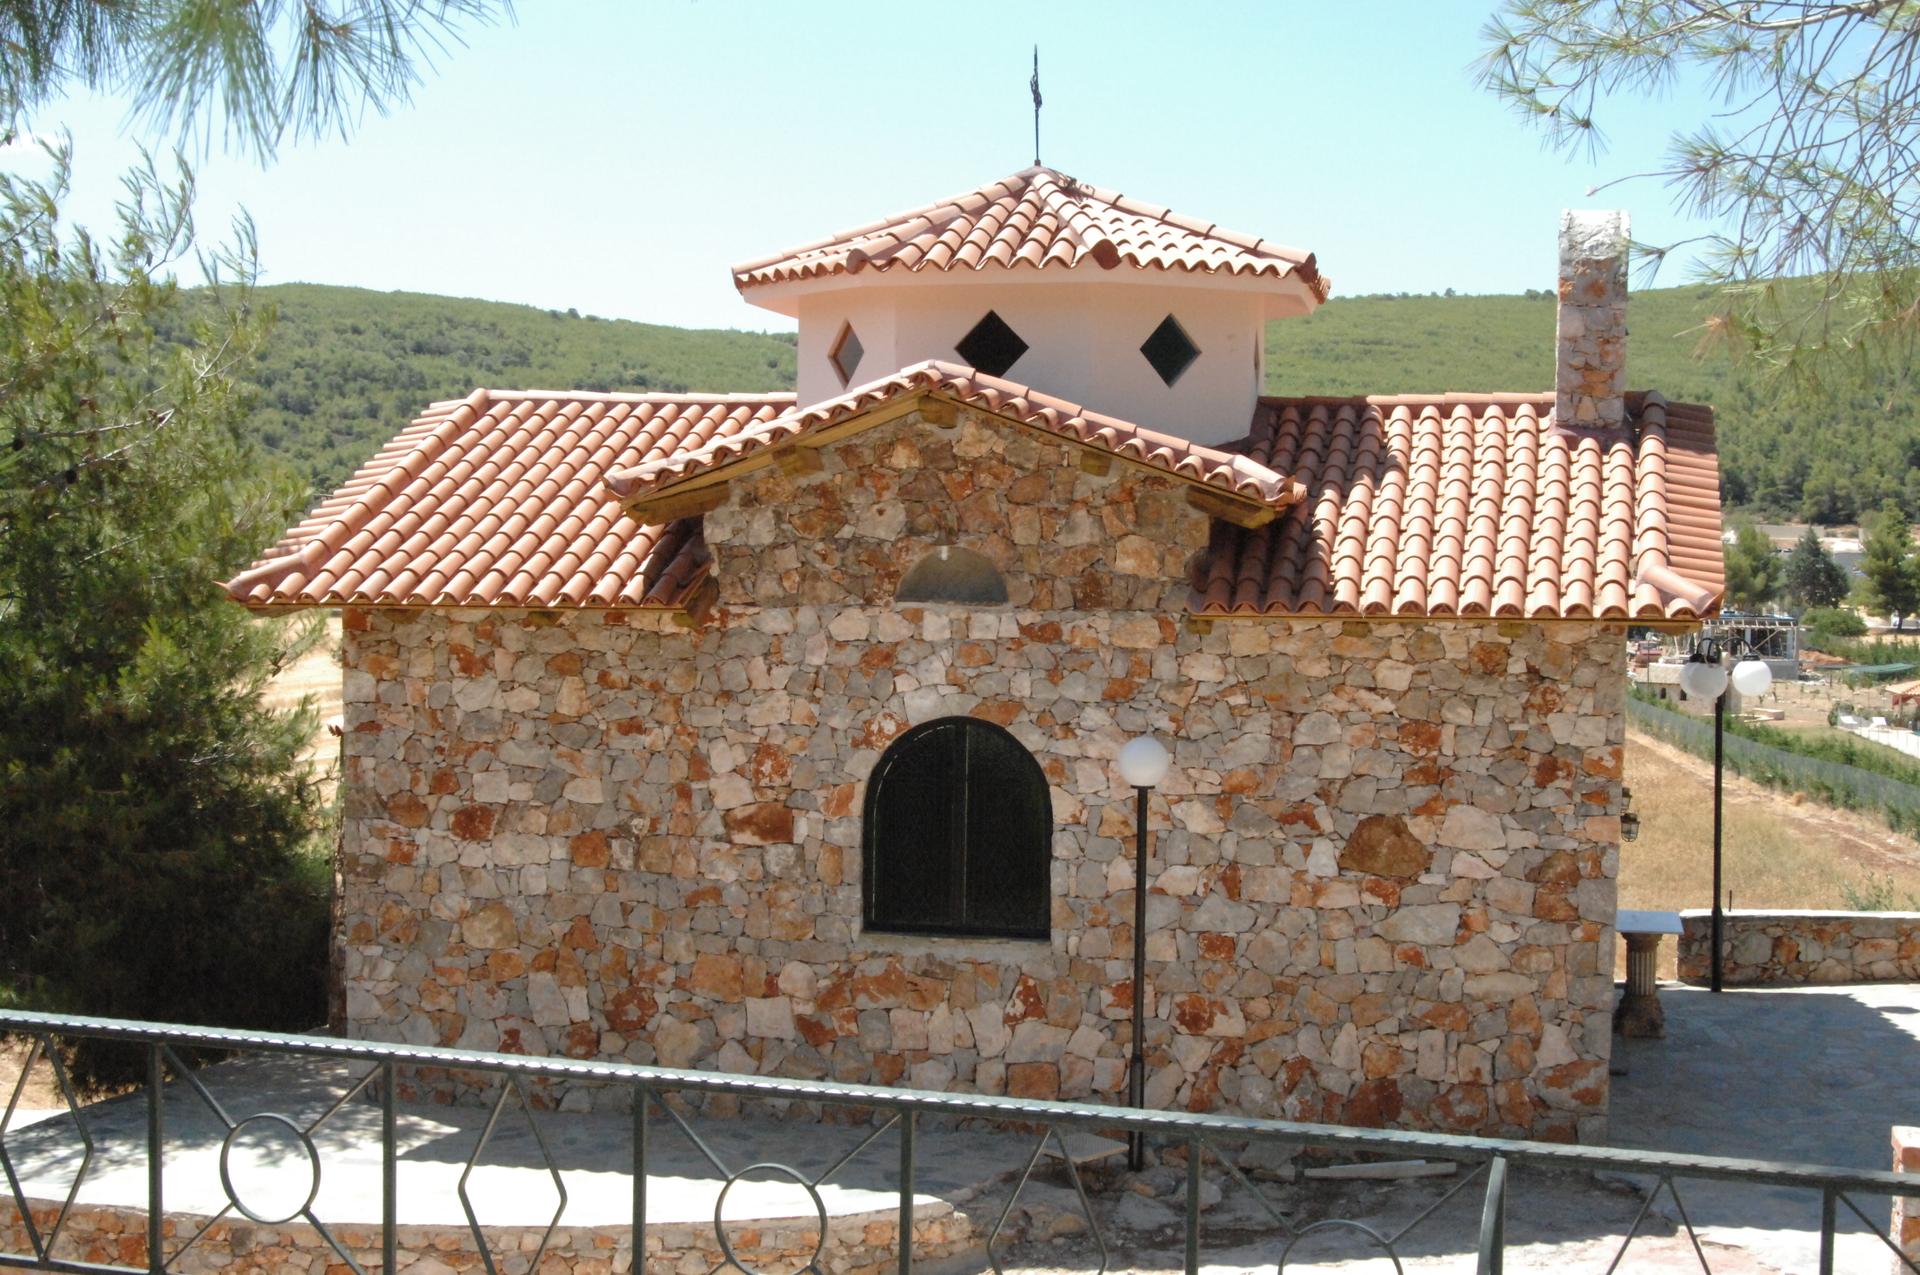 Σκεπή εκκλησιας με βυζαντινα κεραμίδια.